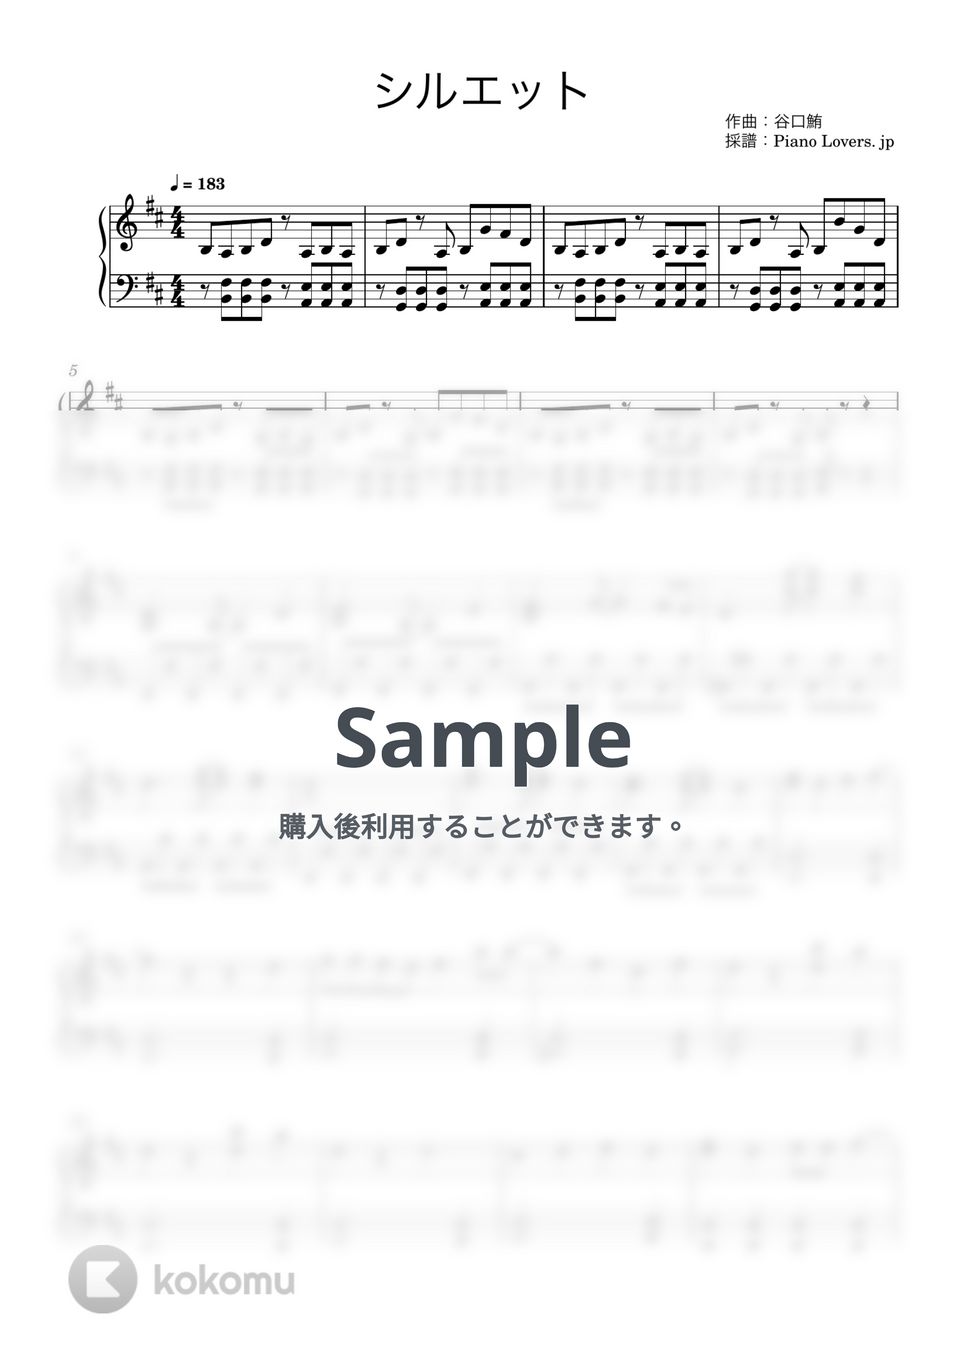 KANA-BOON - シルエット (ナルト疾風伝 / ピアノ楽譜) by Piano Lovers. jp